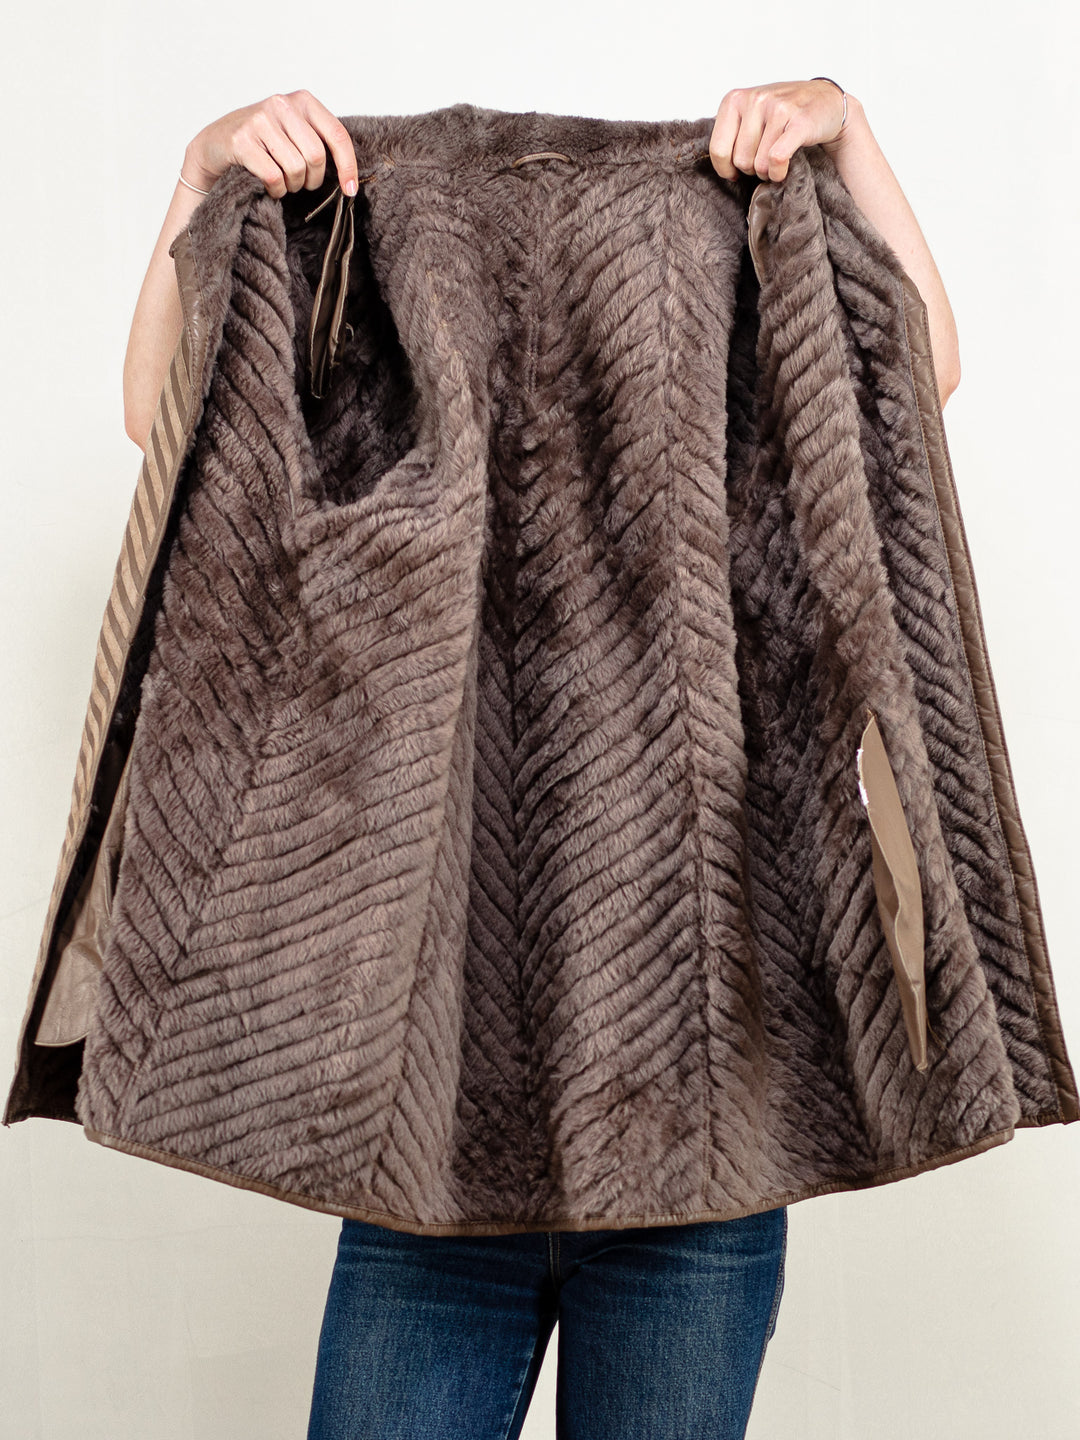 Sheepskin Coat Women 80’s vintage brown suede leather studio 54 winter outerwear shearling coat vintage women outwear size large L